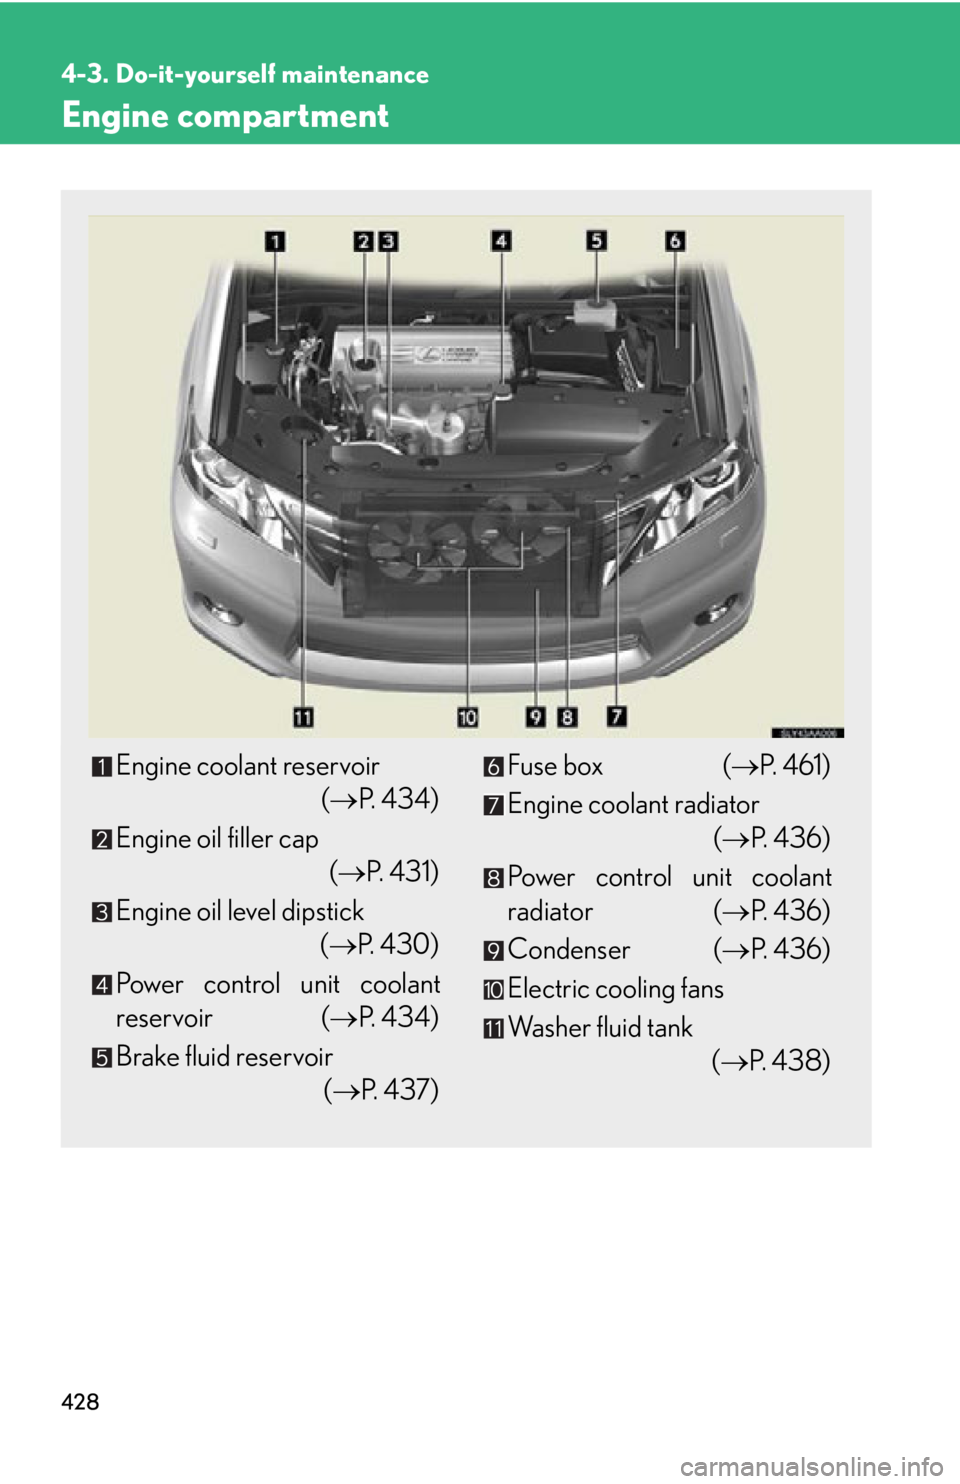 Lexus HS250h 2011  Do-it-yourself maintenance / LEXUS 2011 HS250H OWNERS MANUAL (OM75037U) 428
4-3. Do-it-yourself maintenance
Engine compartment
Engine coolant reservoir (P.  4 3 4 )
Engine oil filler cap (P.  4 3 1 )
Engine oil level dipstick  (P. 430)
Power control unit coolant
